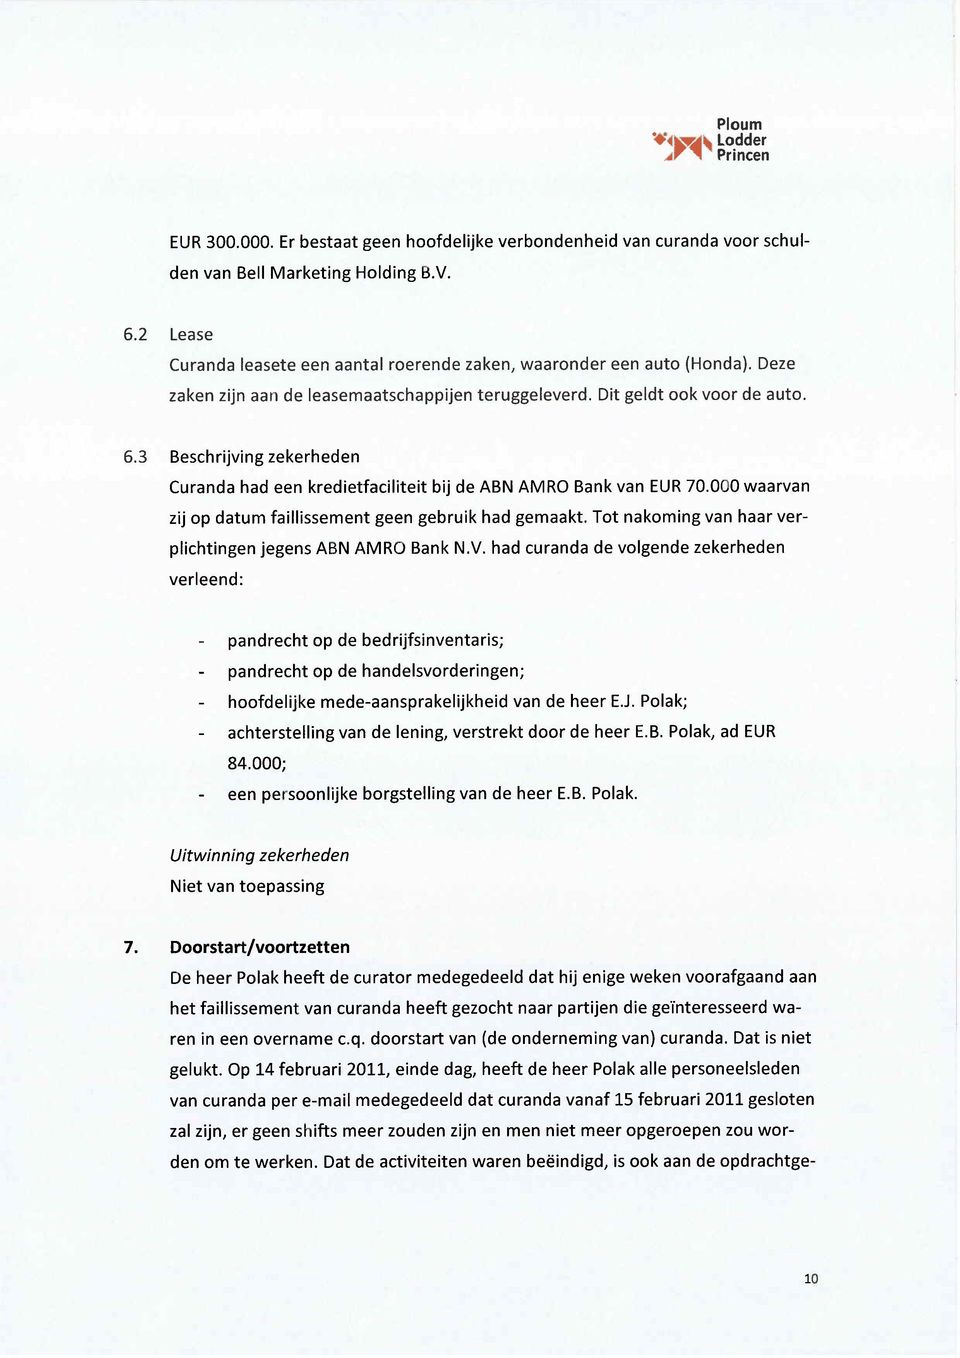 3 Beschrijving zekerheden Curanda had een kredietfaciliteit bij de ABN AMRO Bank van EUR 70.000 waarvan zij op datum faillissement geen gebruik had gemaakt.